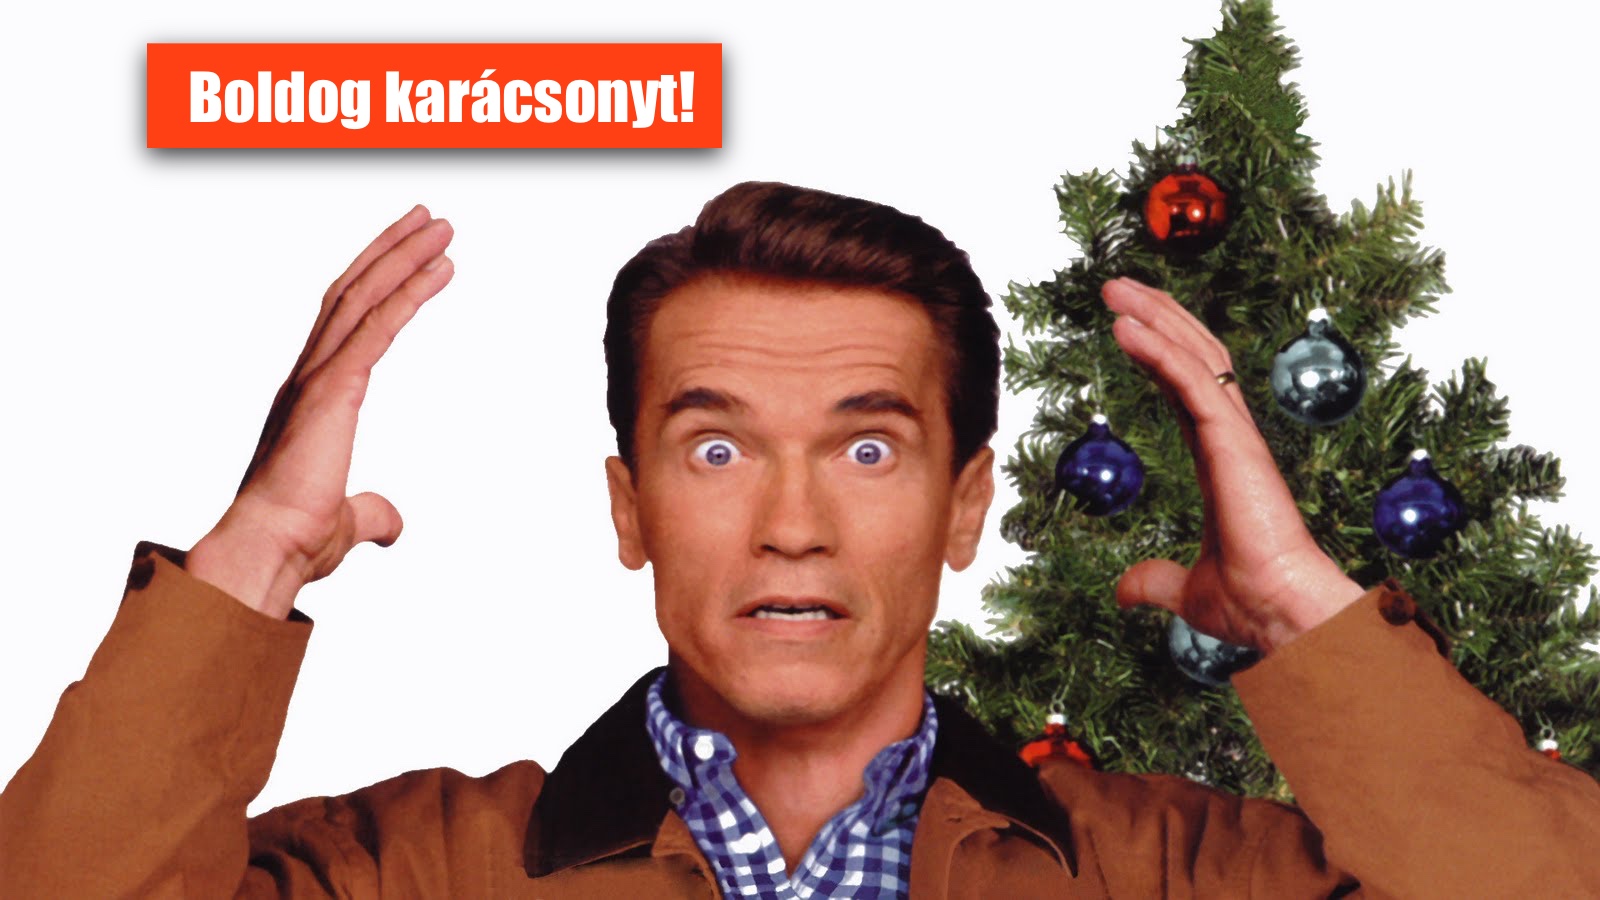 Arnold Schwarzenegger is boldog karácsonyt kívánt a magyaroknak